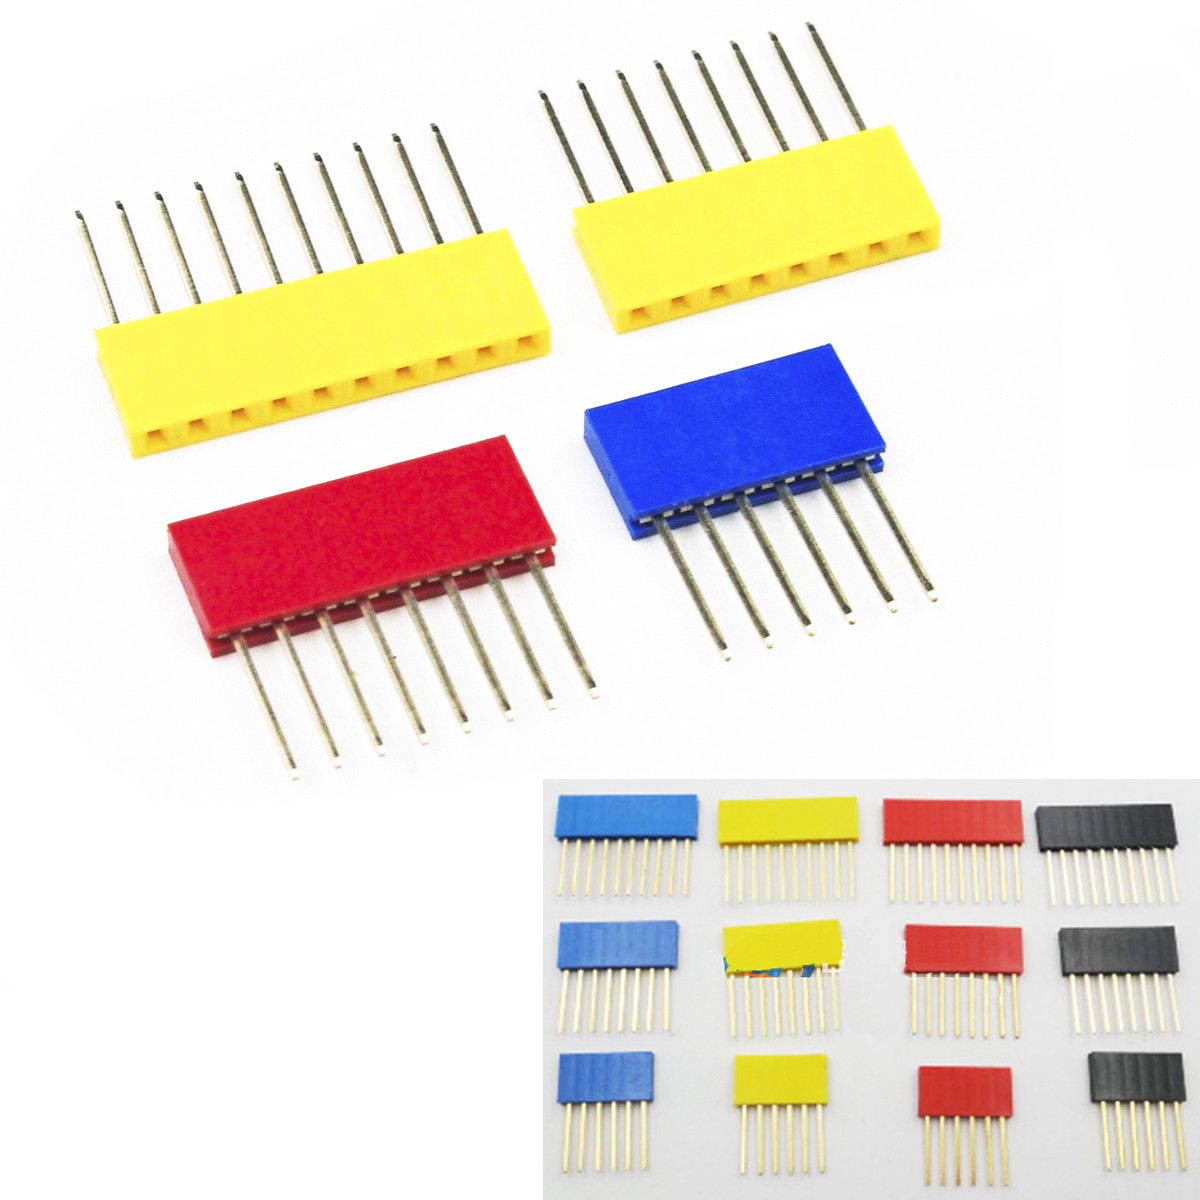 60pcs Colored 2.54mm Single Row Straight Pin Header 11mm Long Pin Socket PCB Connector